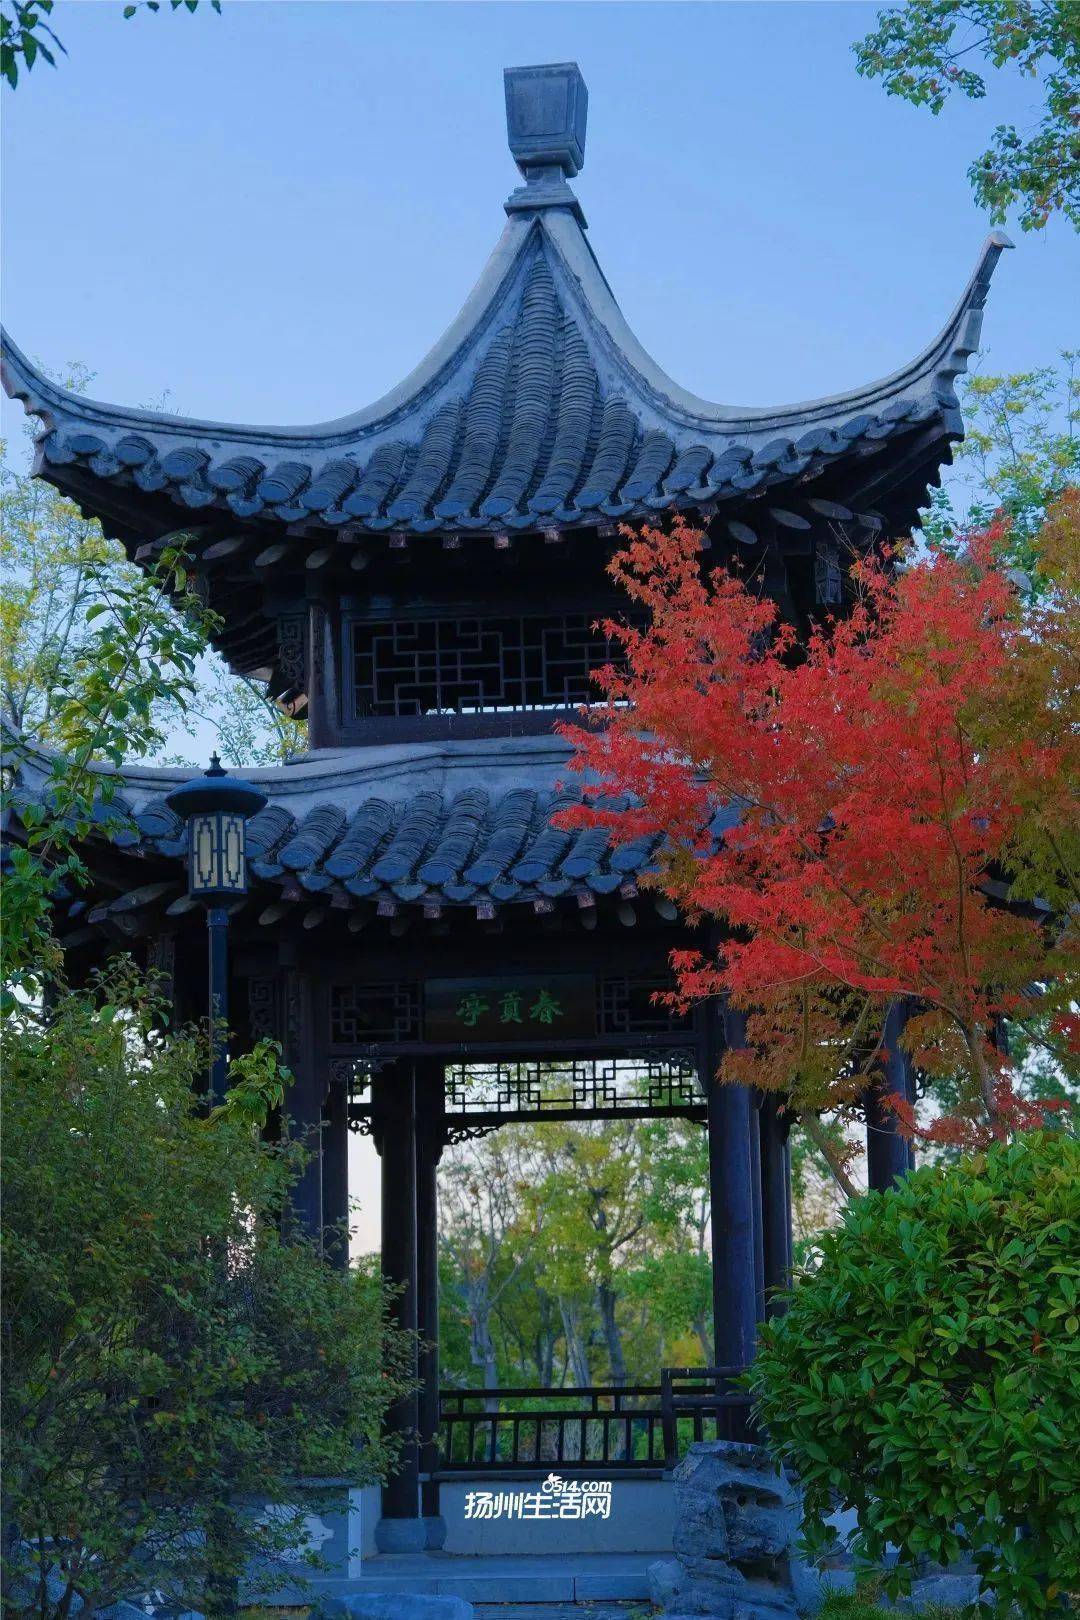 扬州竹西公园图片